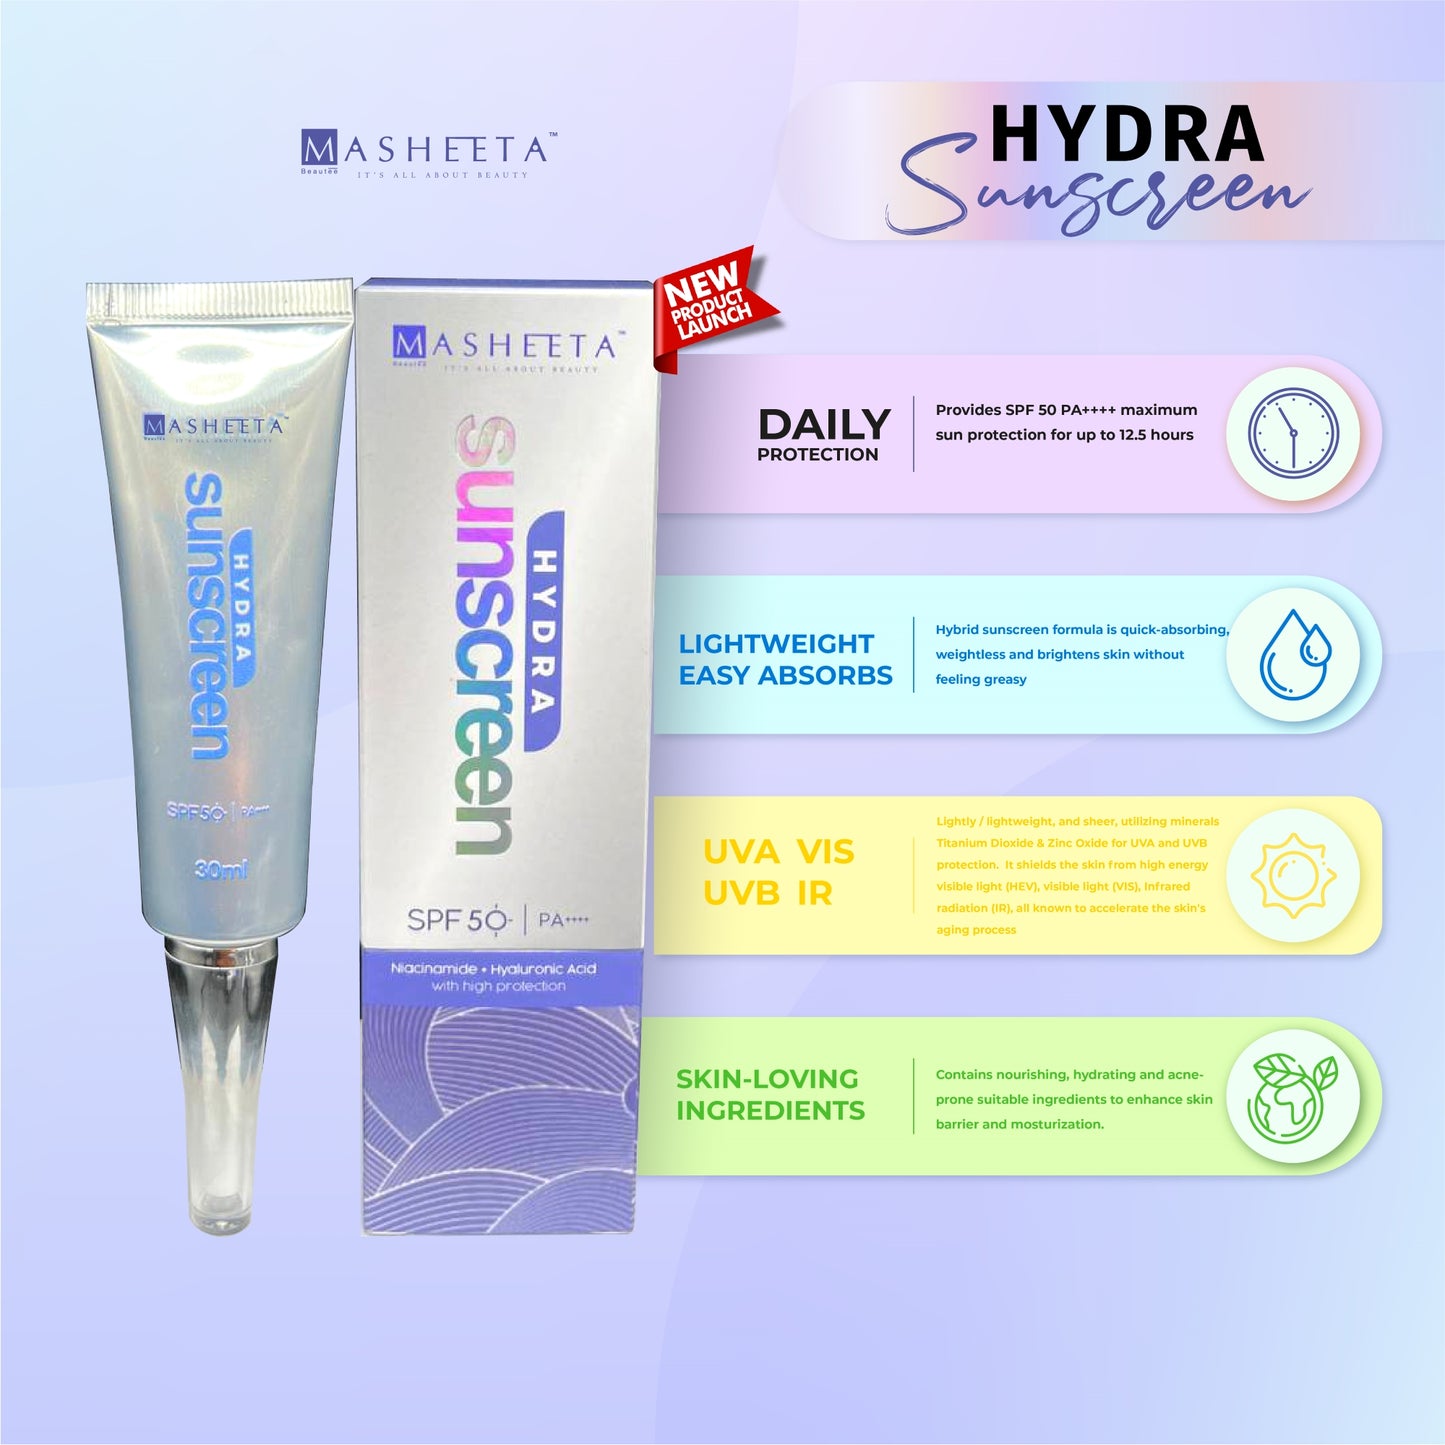 Hydra Sunscreen